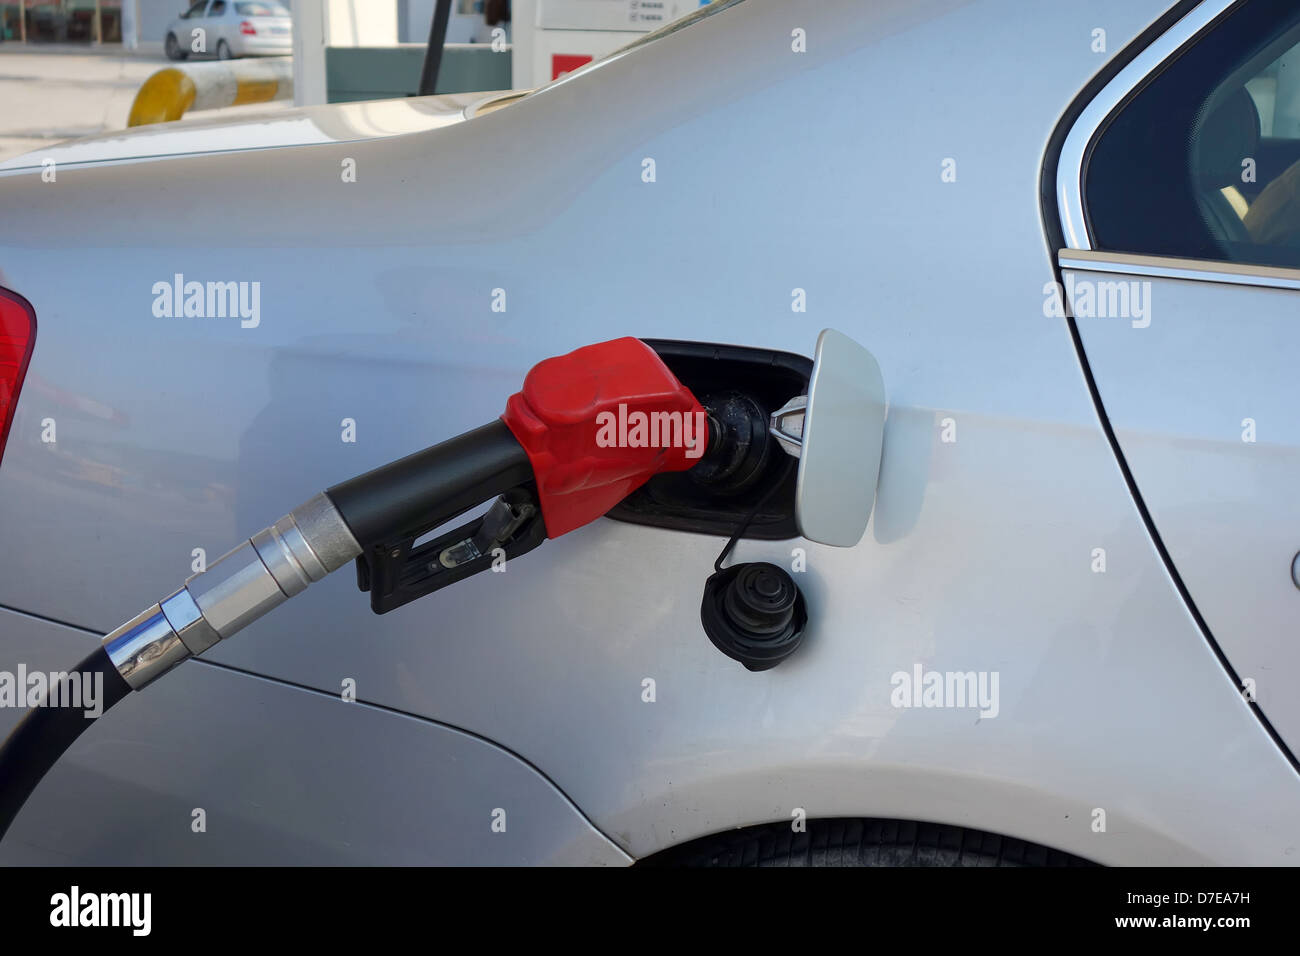 Benzin ein Auto aus einem Kanister durch einen Trichter gießen  Stockfotografie - Alamy